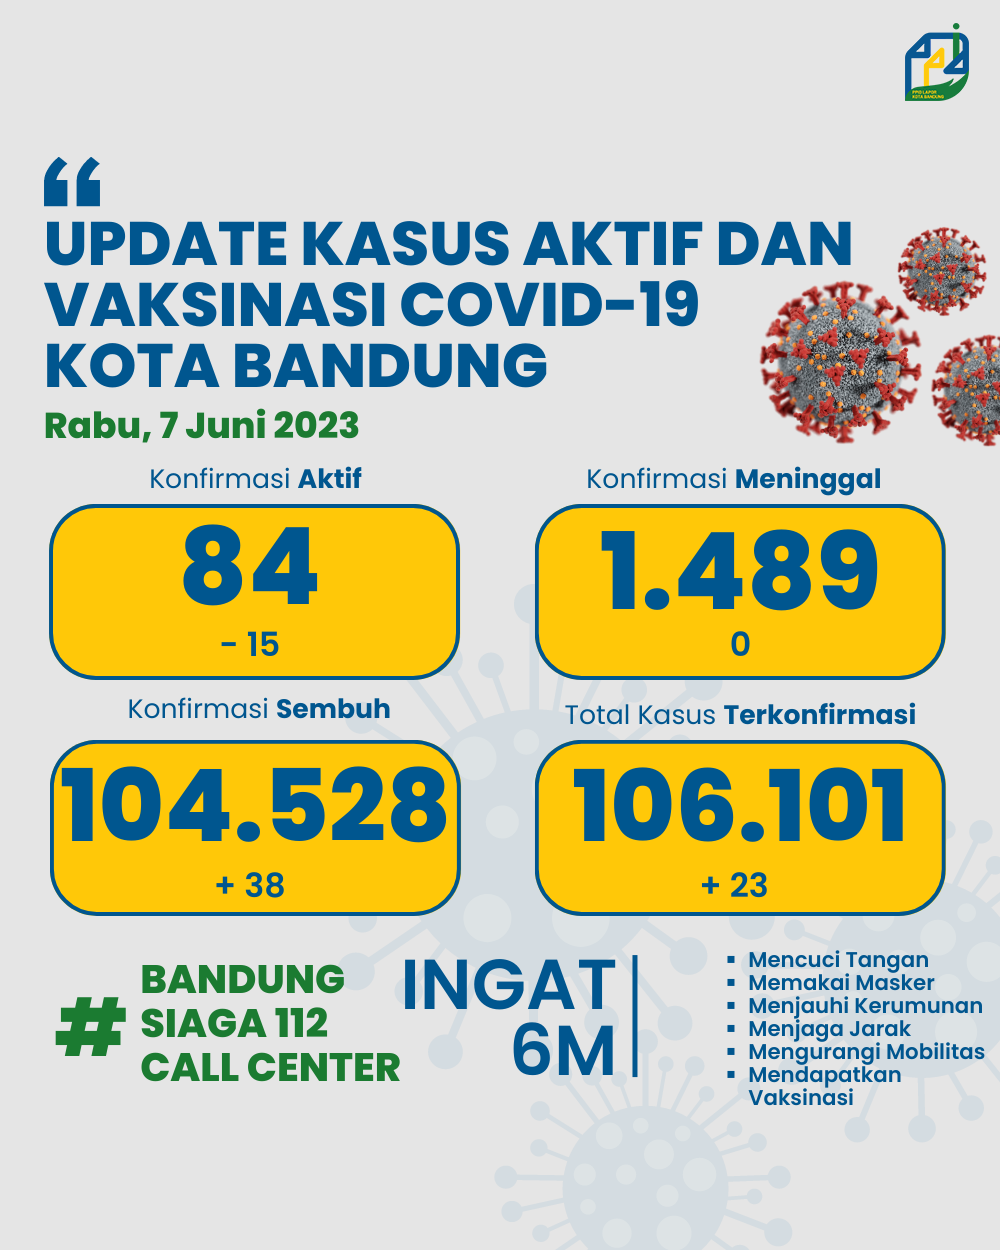 UPDATE STATISTIK COVID-19 DI KOTA BANDUNG PER TANGGAL 7 JUNI 2023